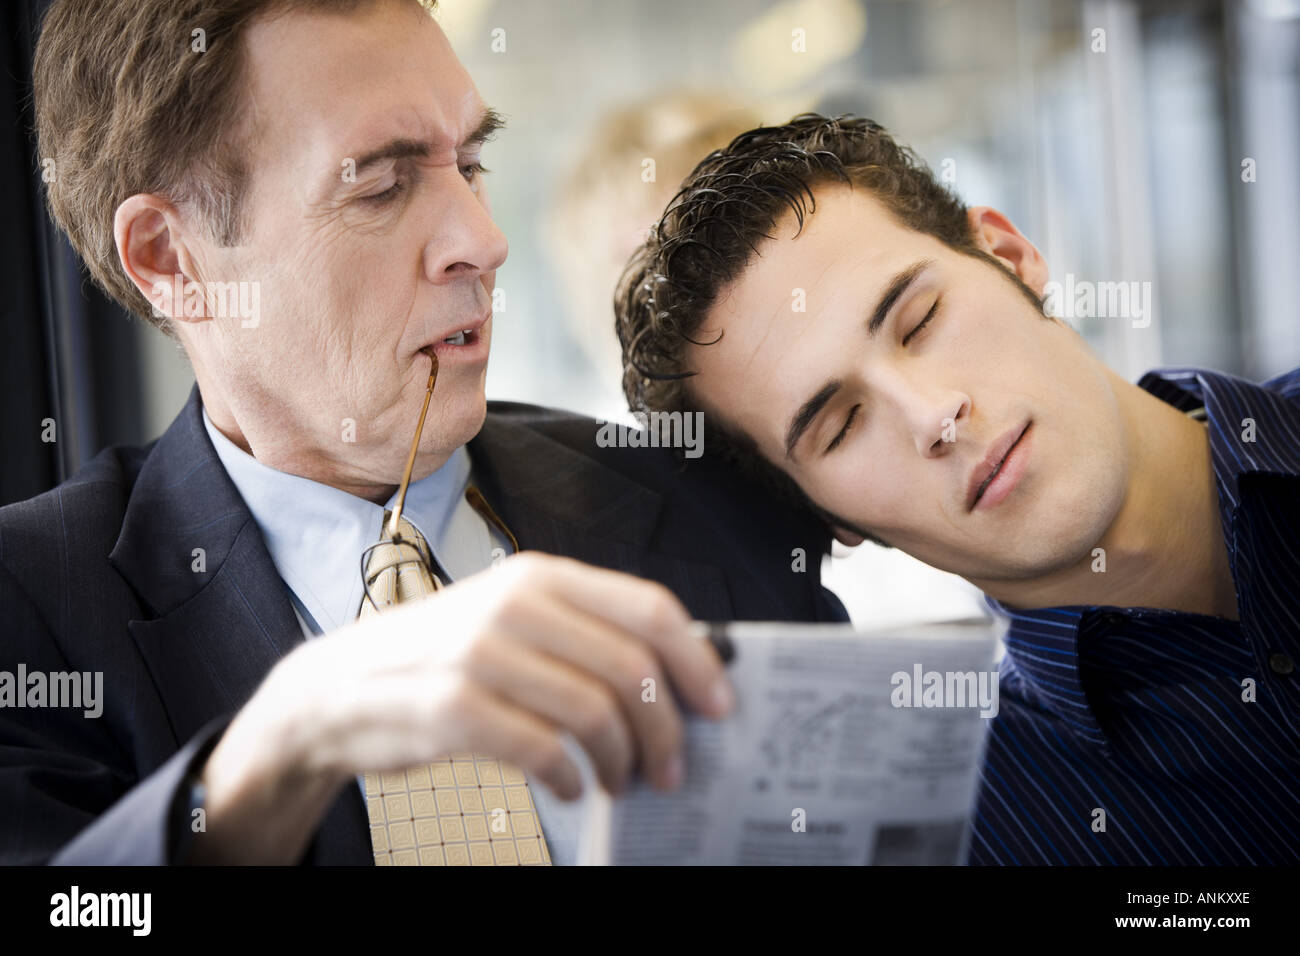 Portrait d'un jeune homme endormi sur un homme mûr s'épaule Banque D'Images